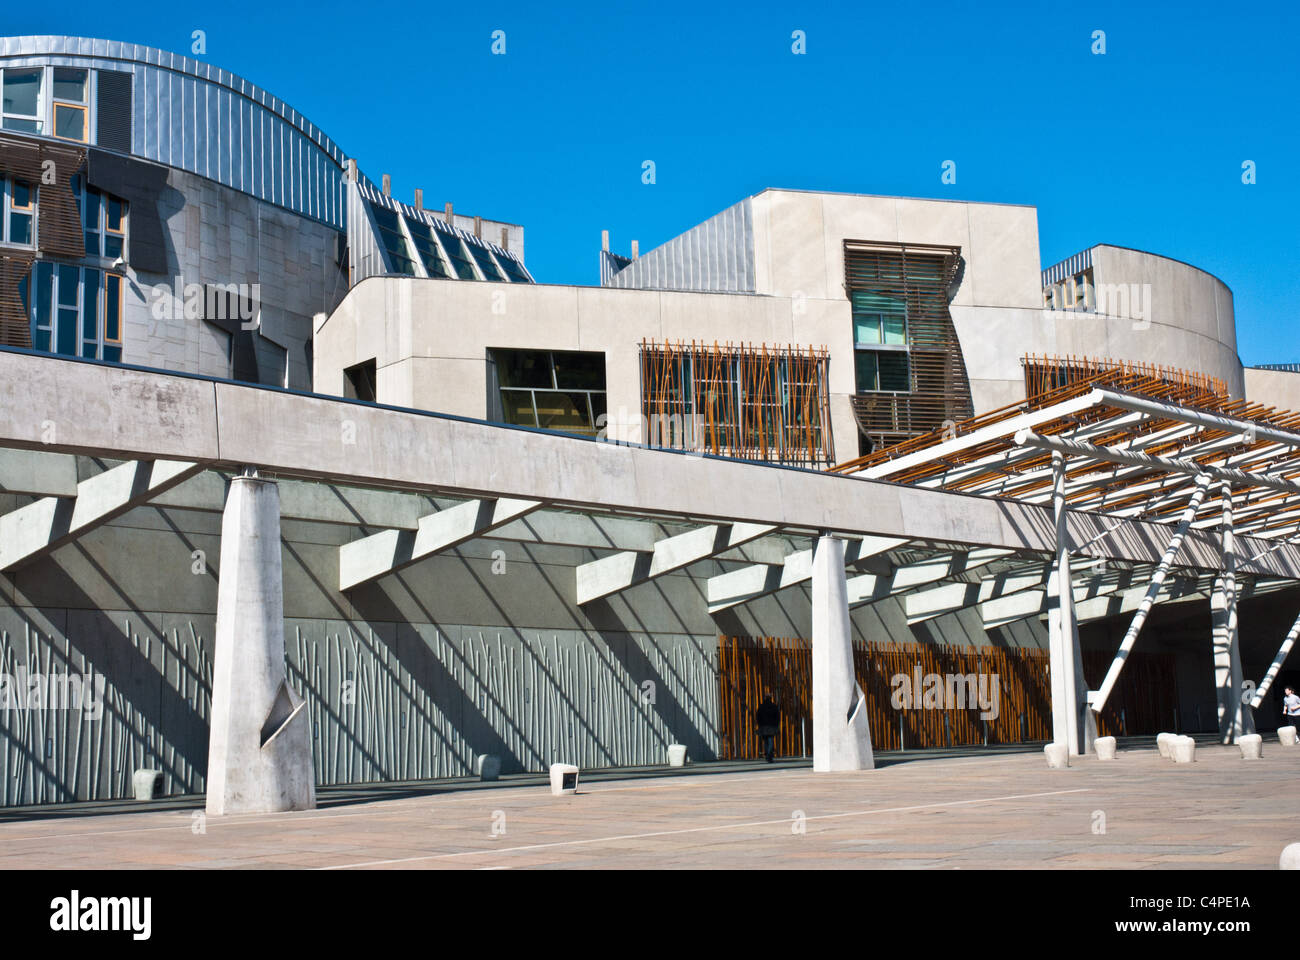 Il parlamento scozzese di Edimburgo. suggestiva ed innovativa architettura per una devoluto in Scozia. Colori luminosi e cielo blu chiaro. Foto Stock